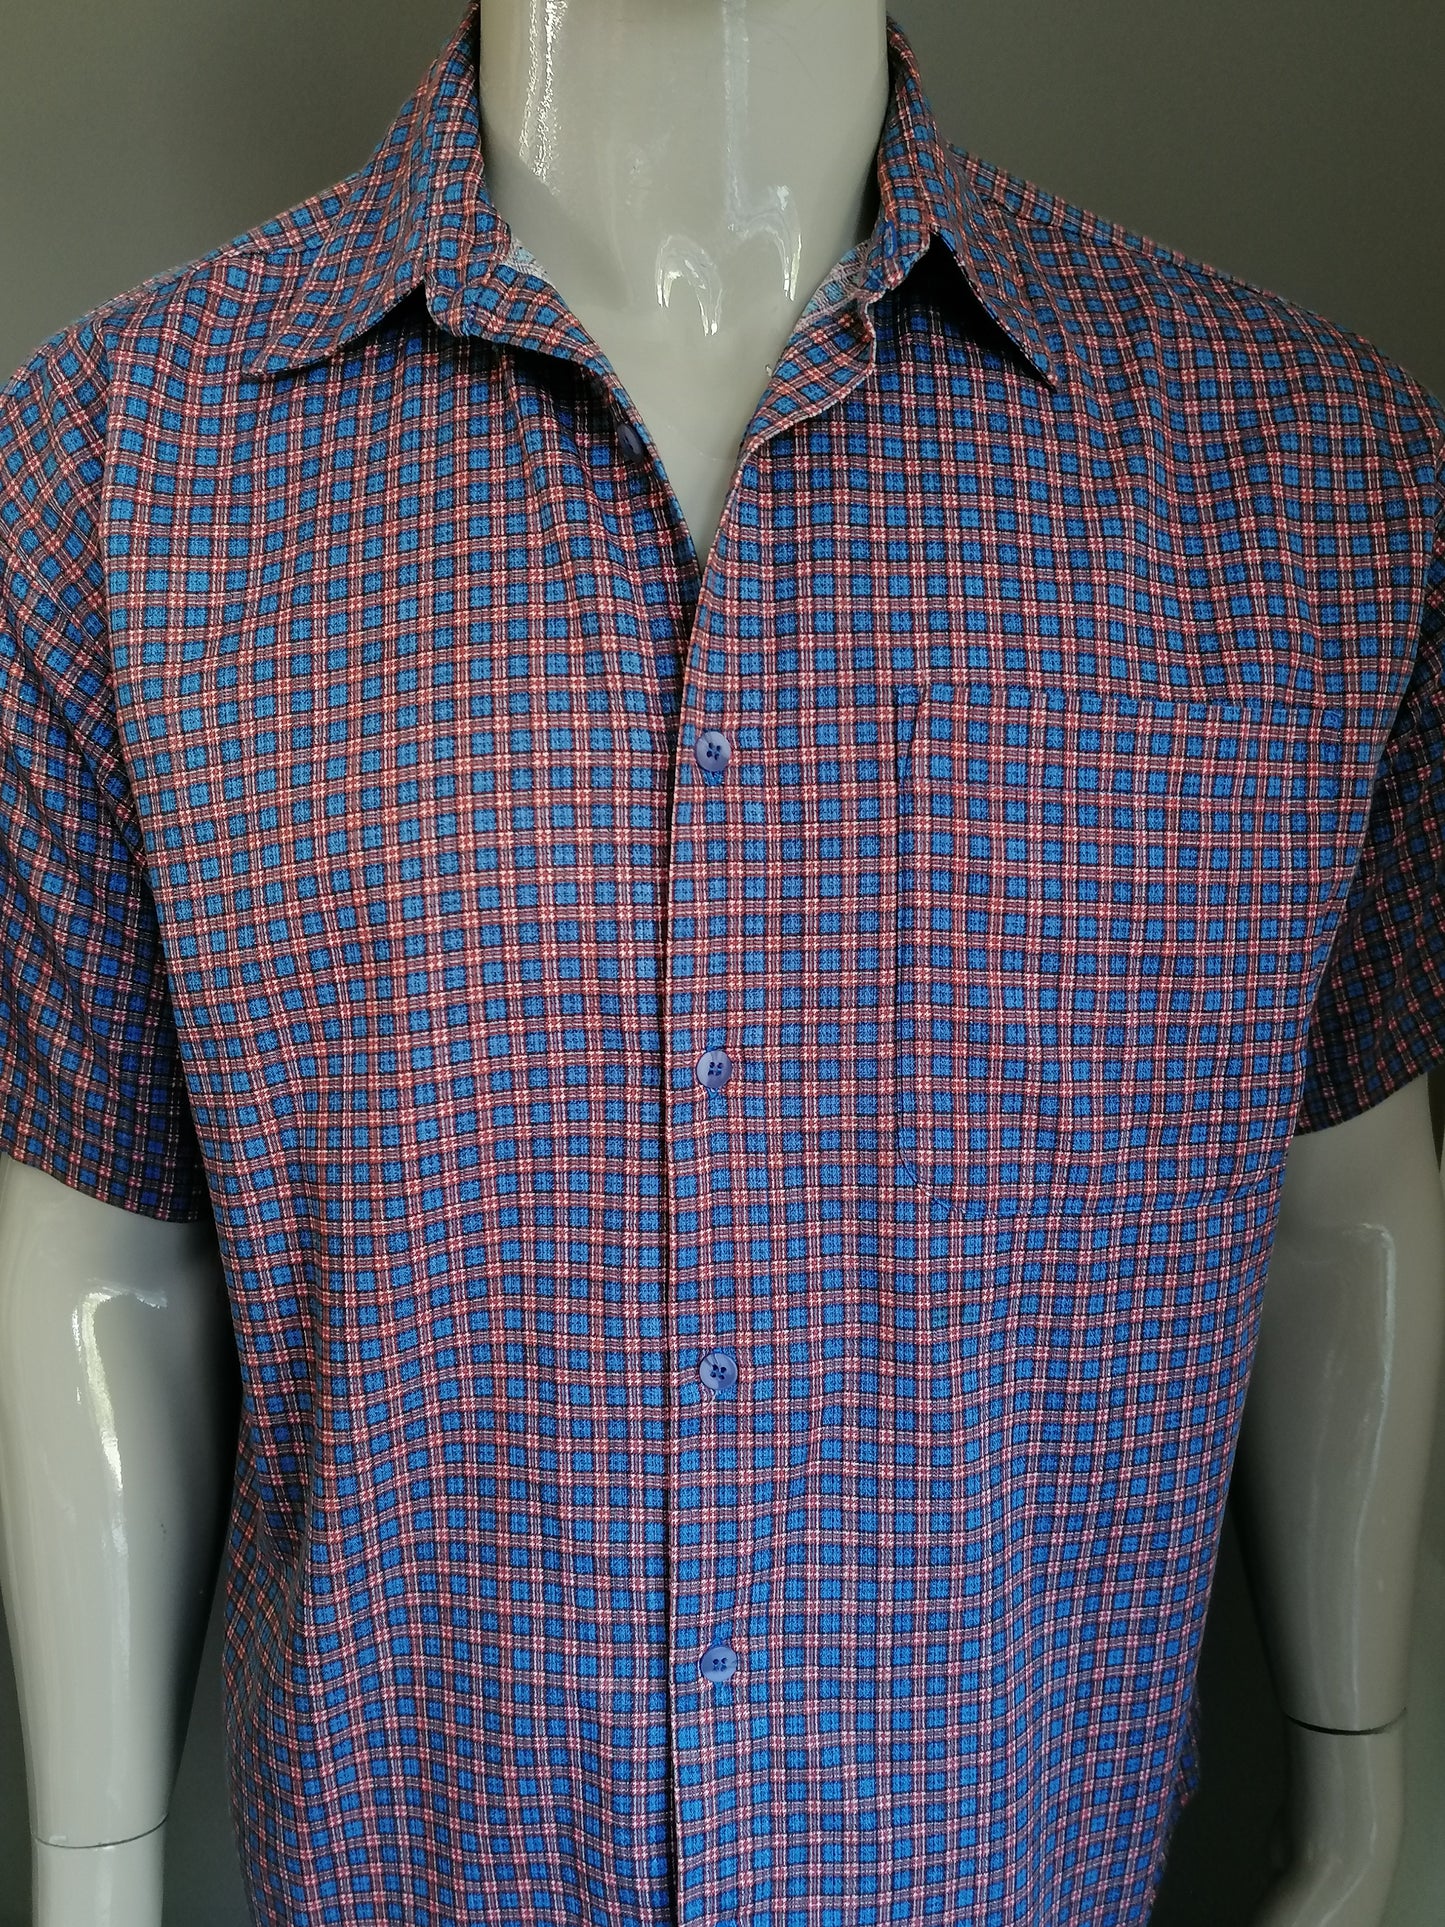 Vintage Zero overhemd korte mouw. Blauw Oranje geblokt. Maat XL.